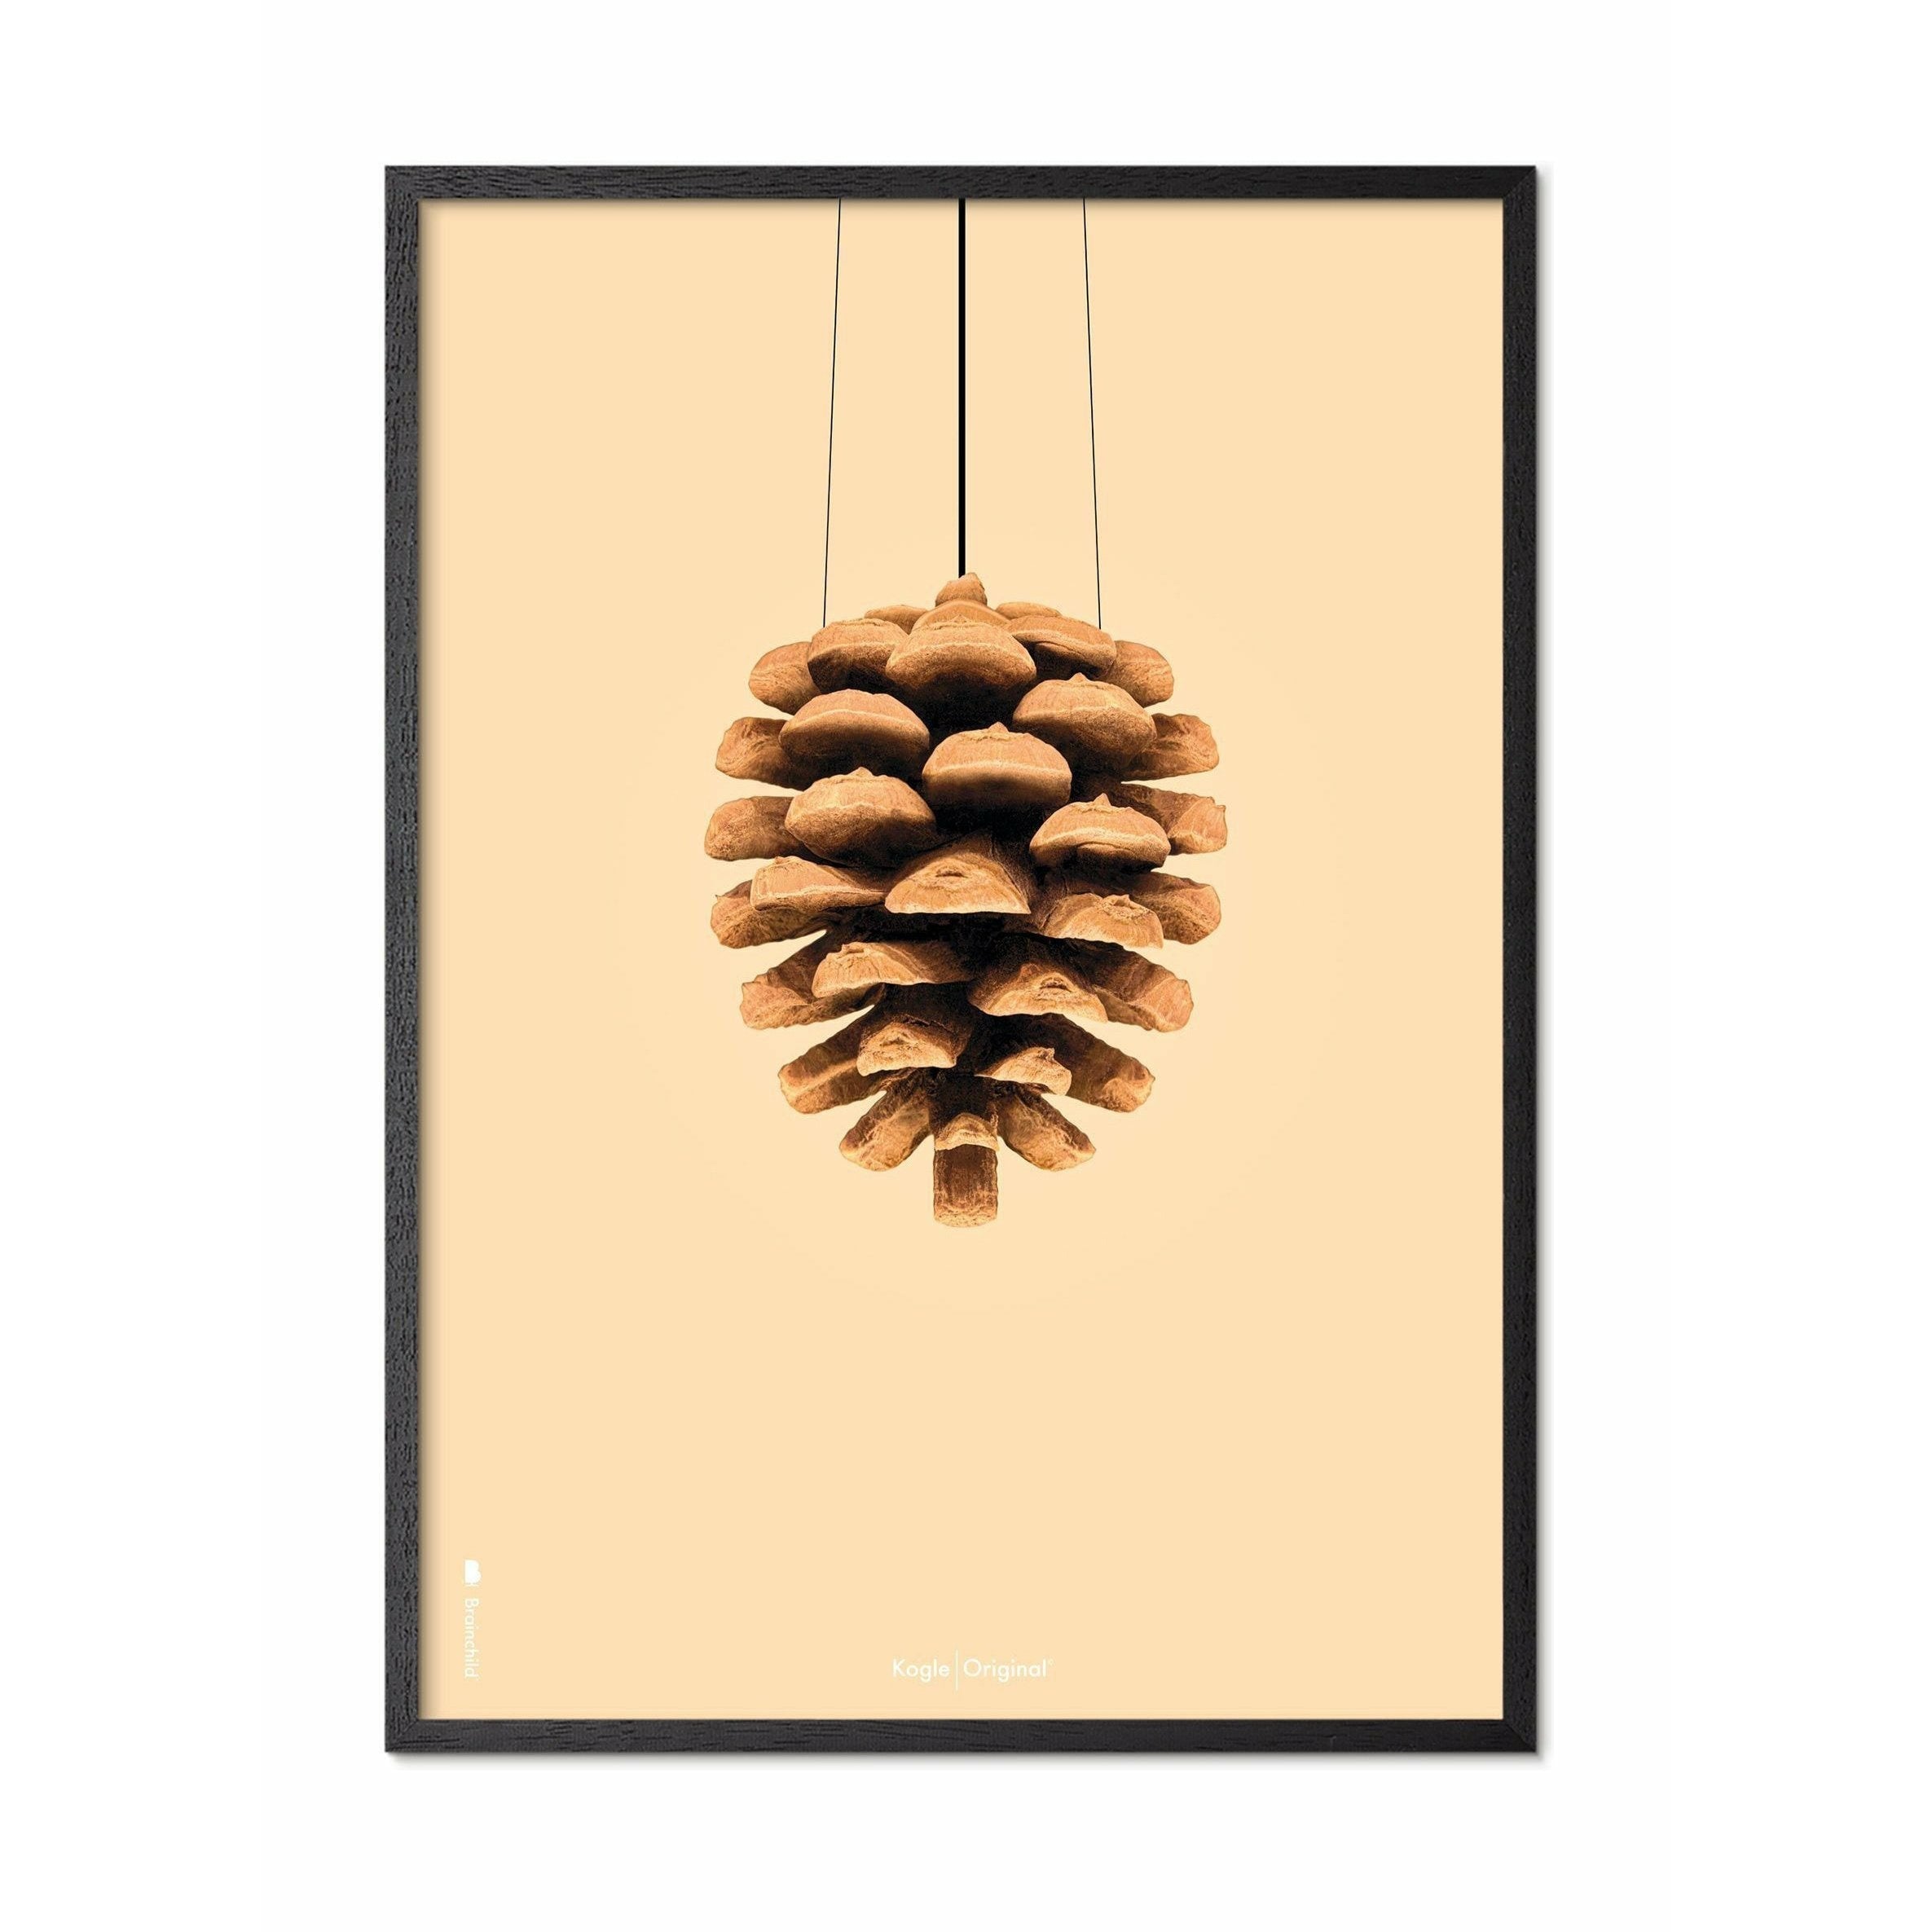 Póster clásico de conos de pino de creación, marco en madera lacada negra A5, fondo de color arena